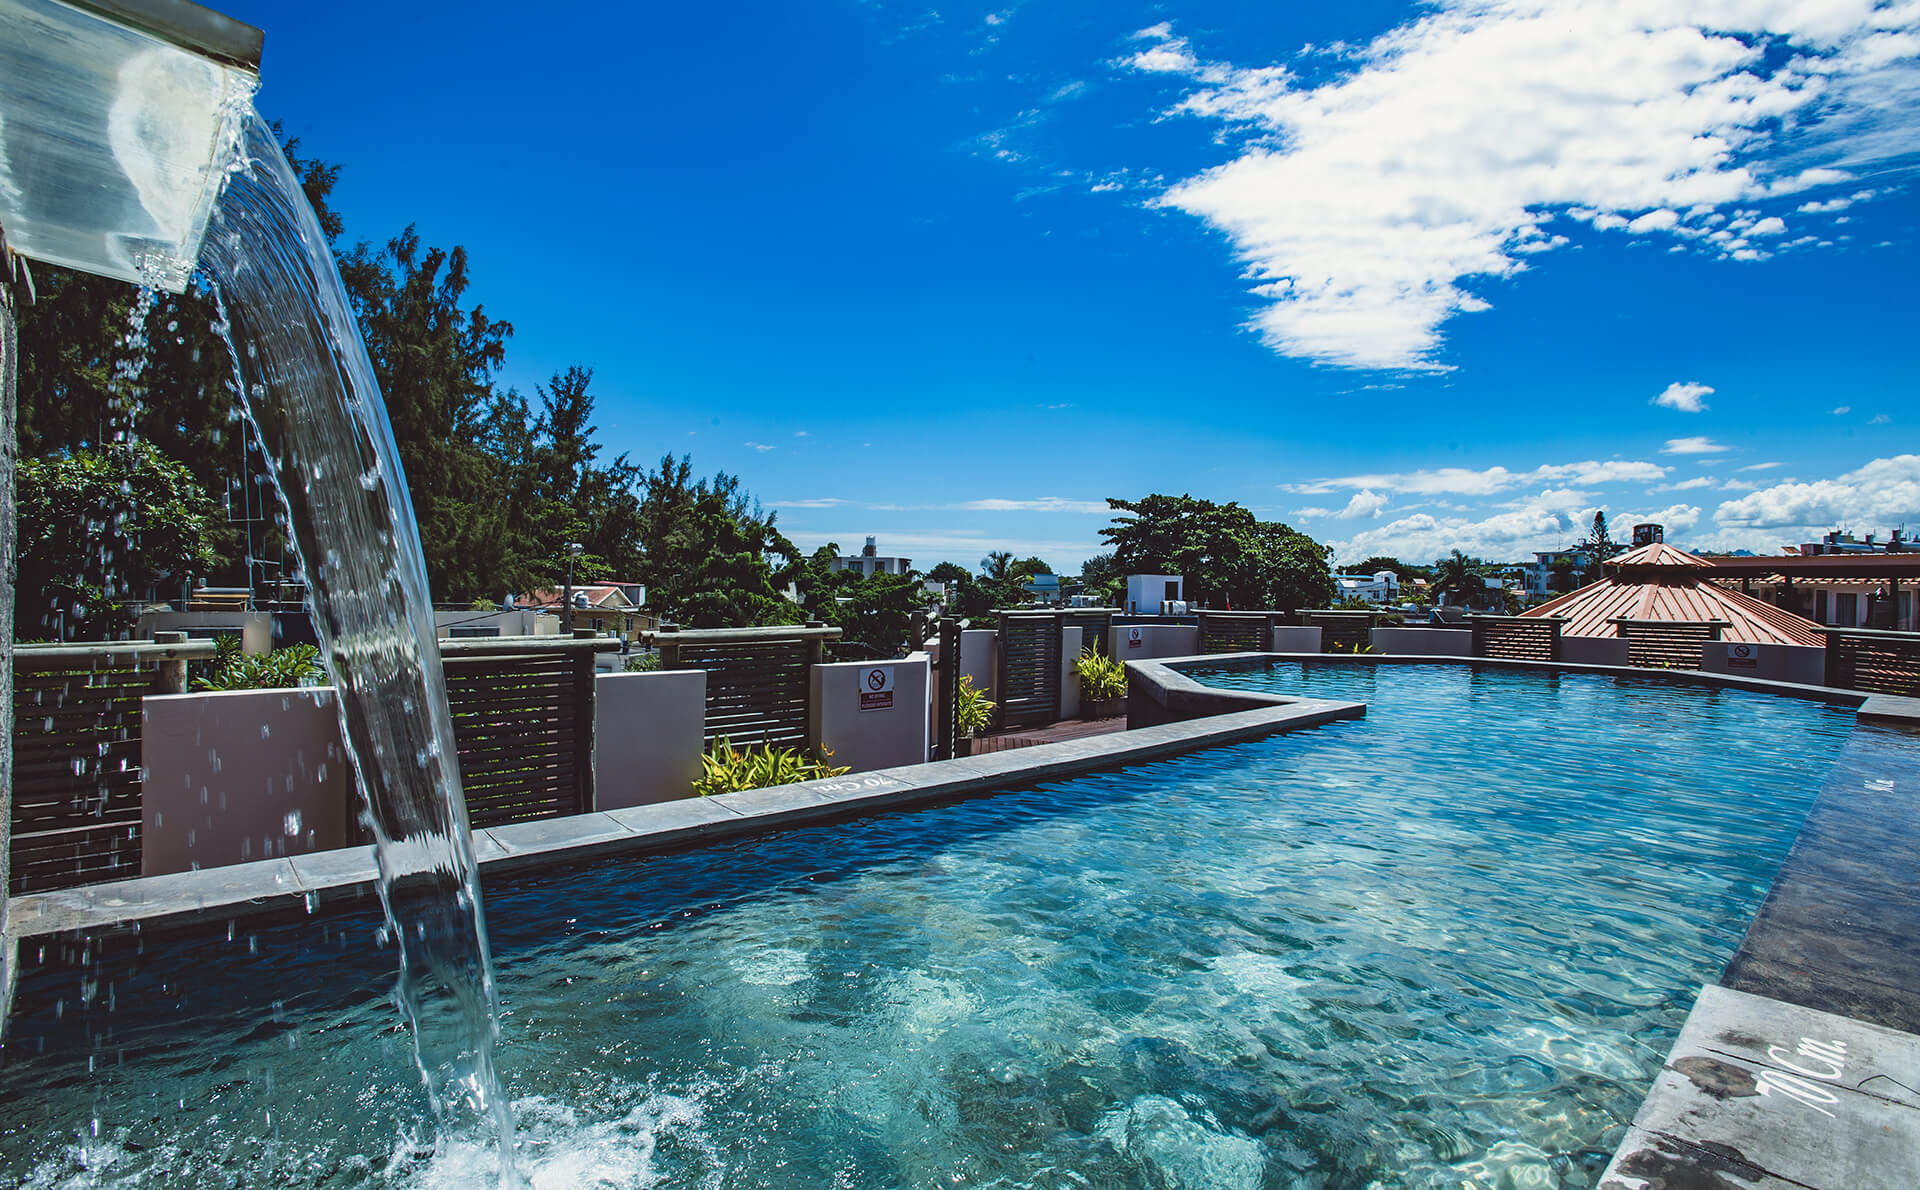 Aanari Hotel & Spa, Mauritius